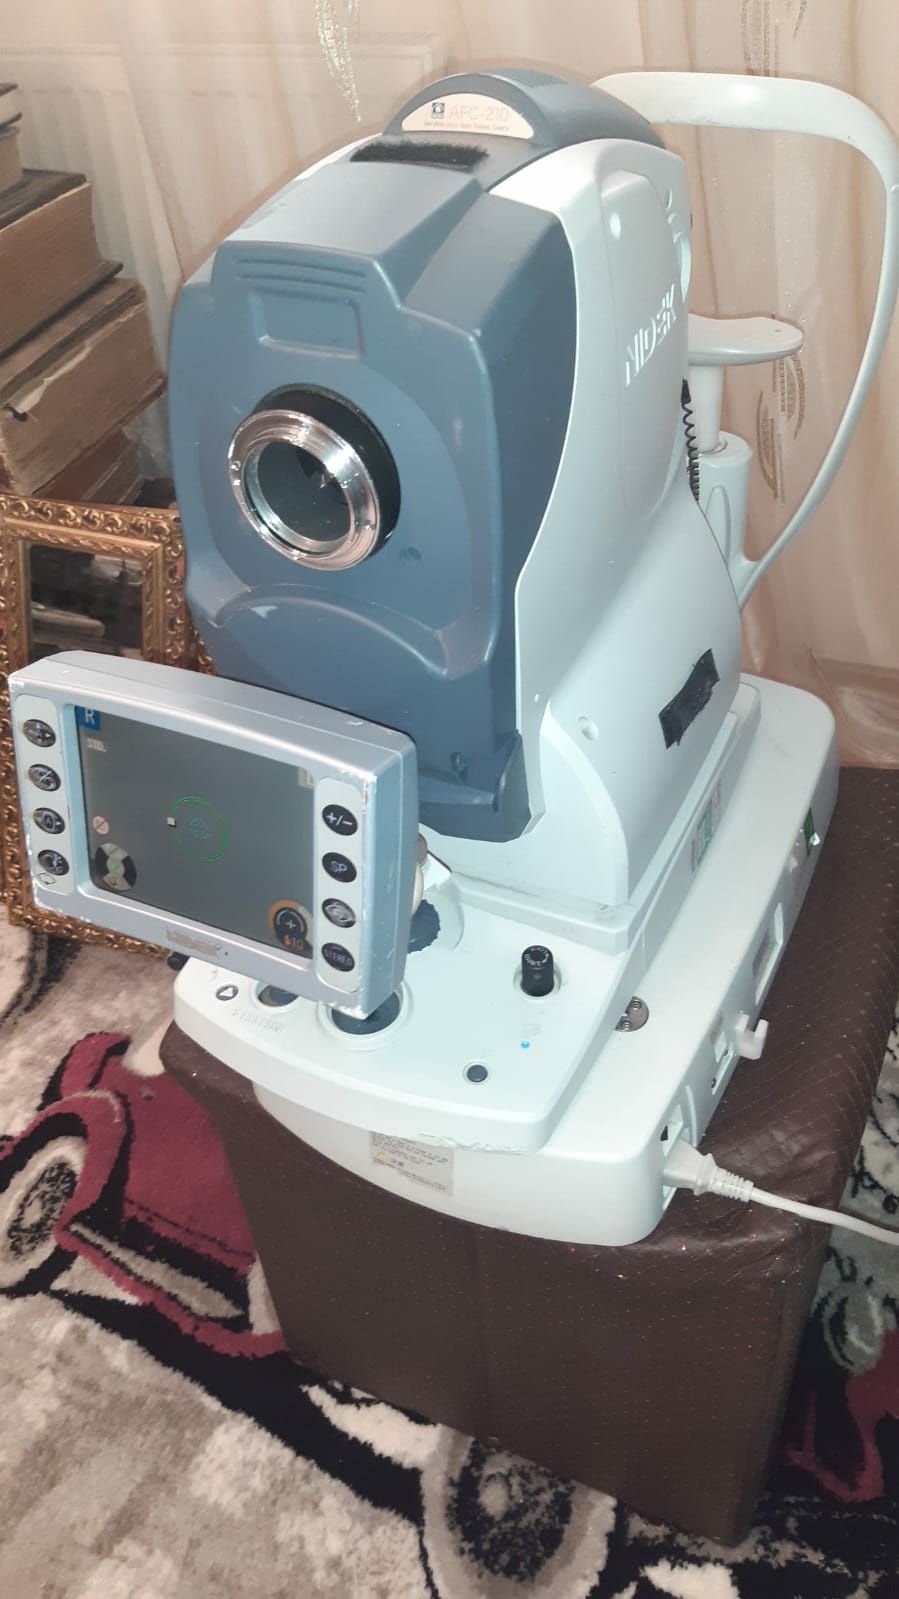 Nidek AFC210 computer tomograf fund de ochi